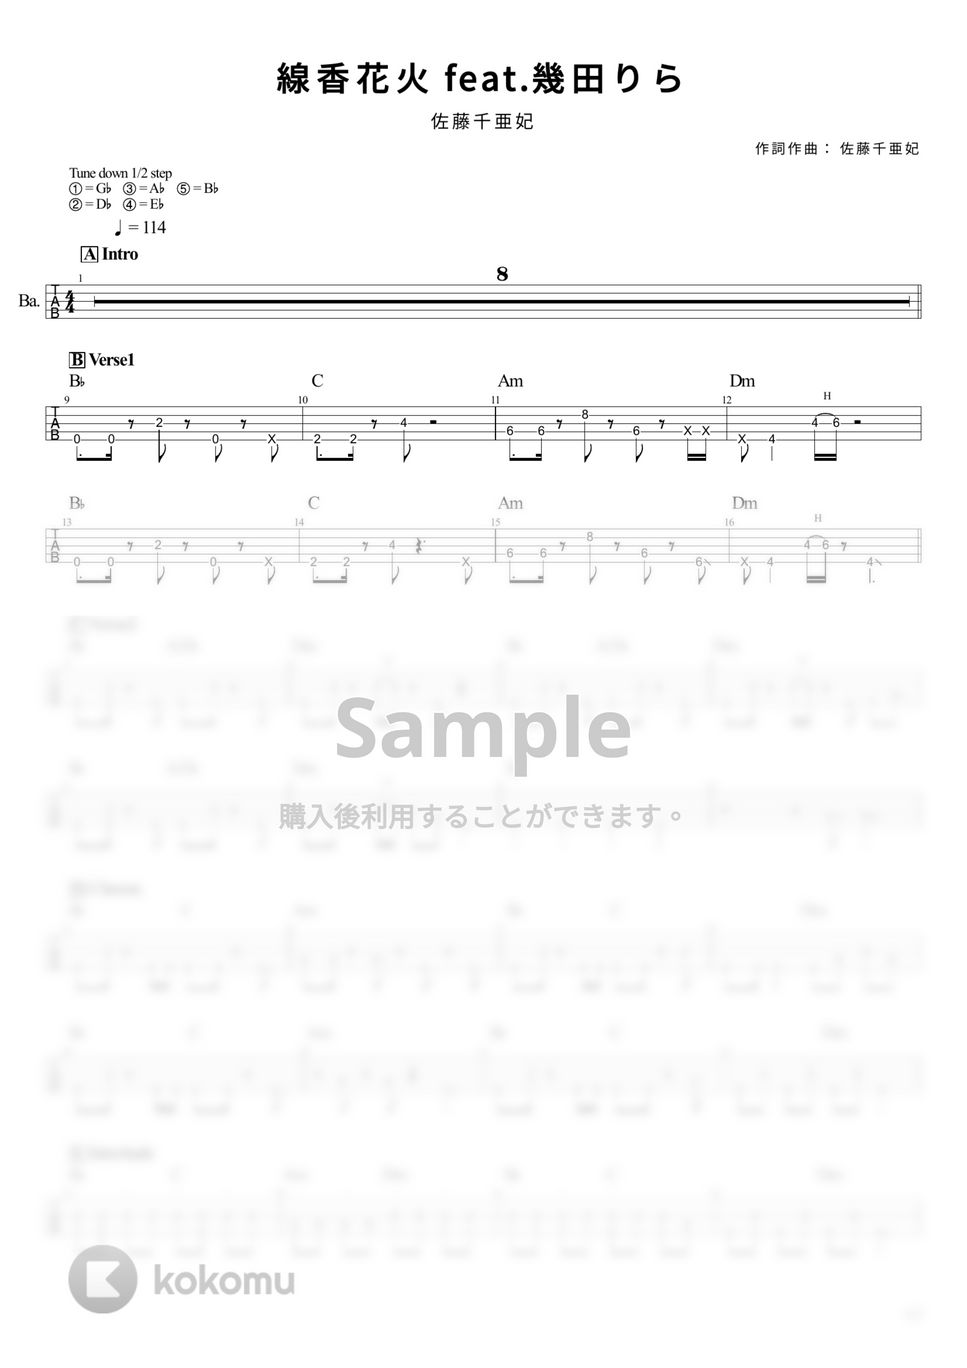 佐藤千亜妃 - 線香花火 feat.幾田りら (Tabのみ/ベース Tab譜 5弦) by T's bass score